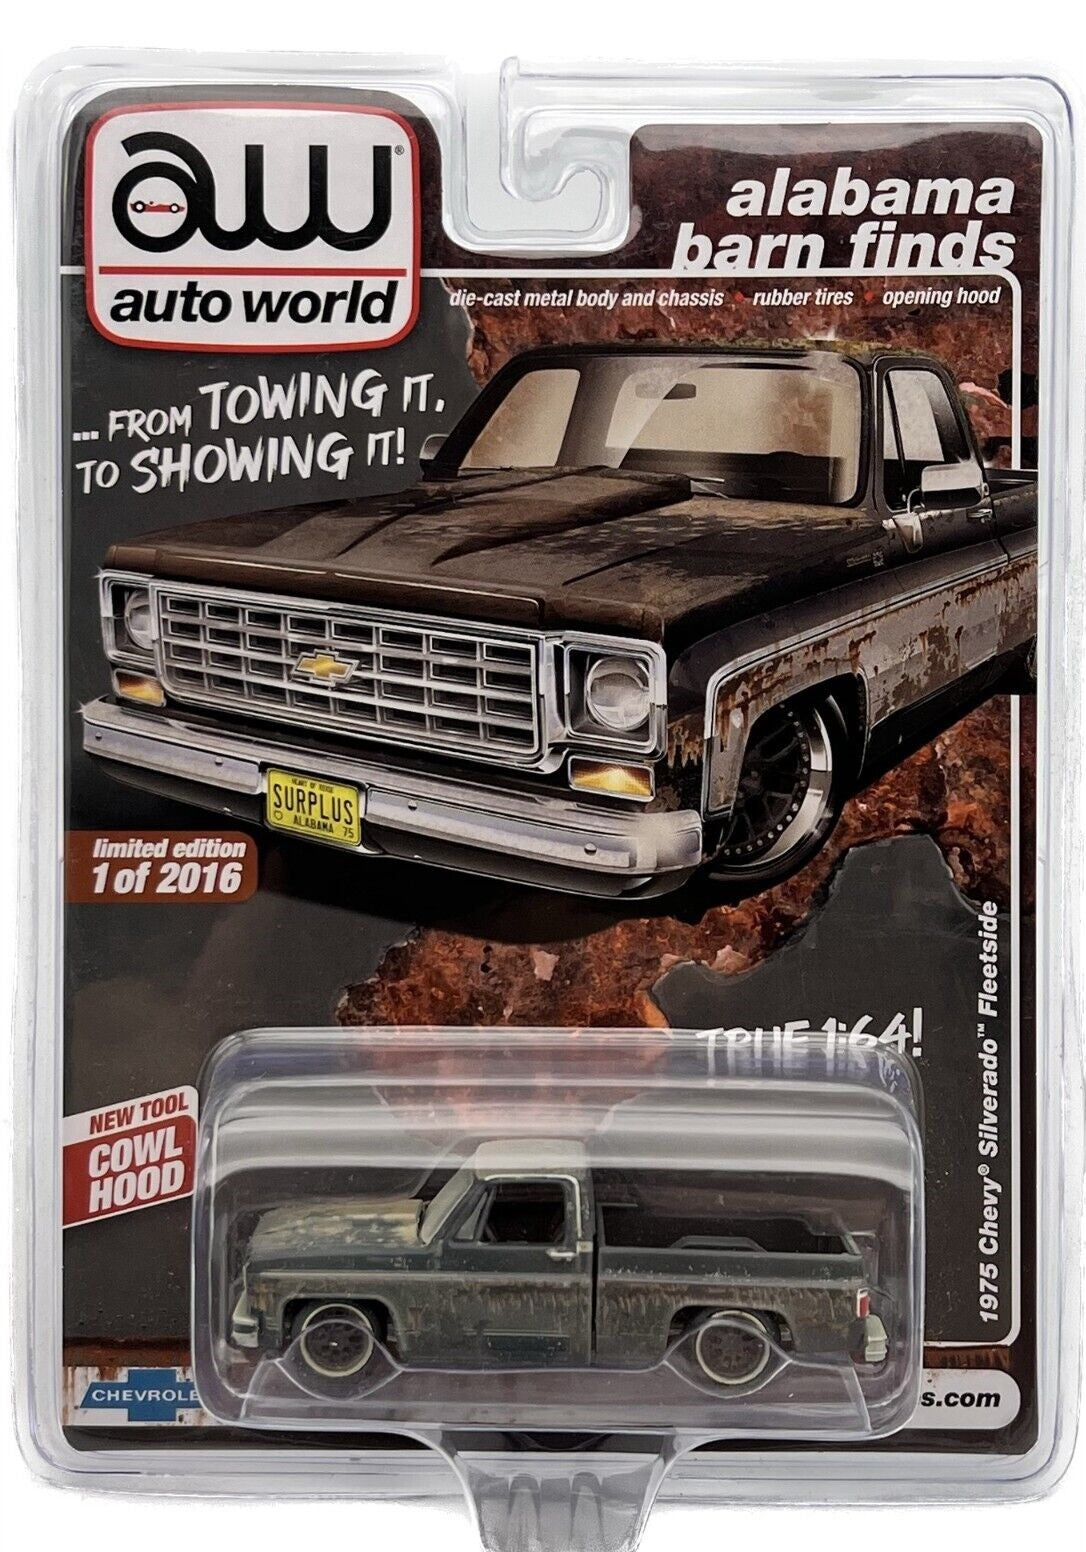 Auto World Alabama Barn Finds Exclusives 1975 Chevy Silverado Fleetside Rusty Version 1:64